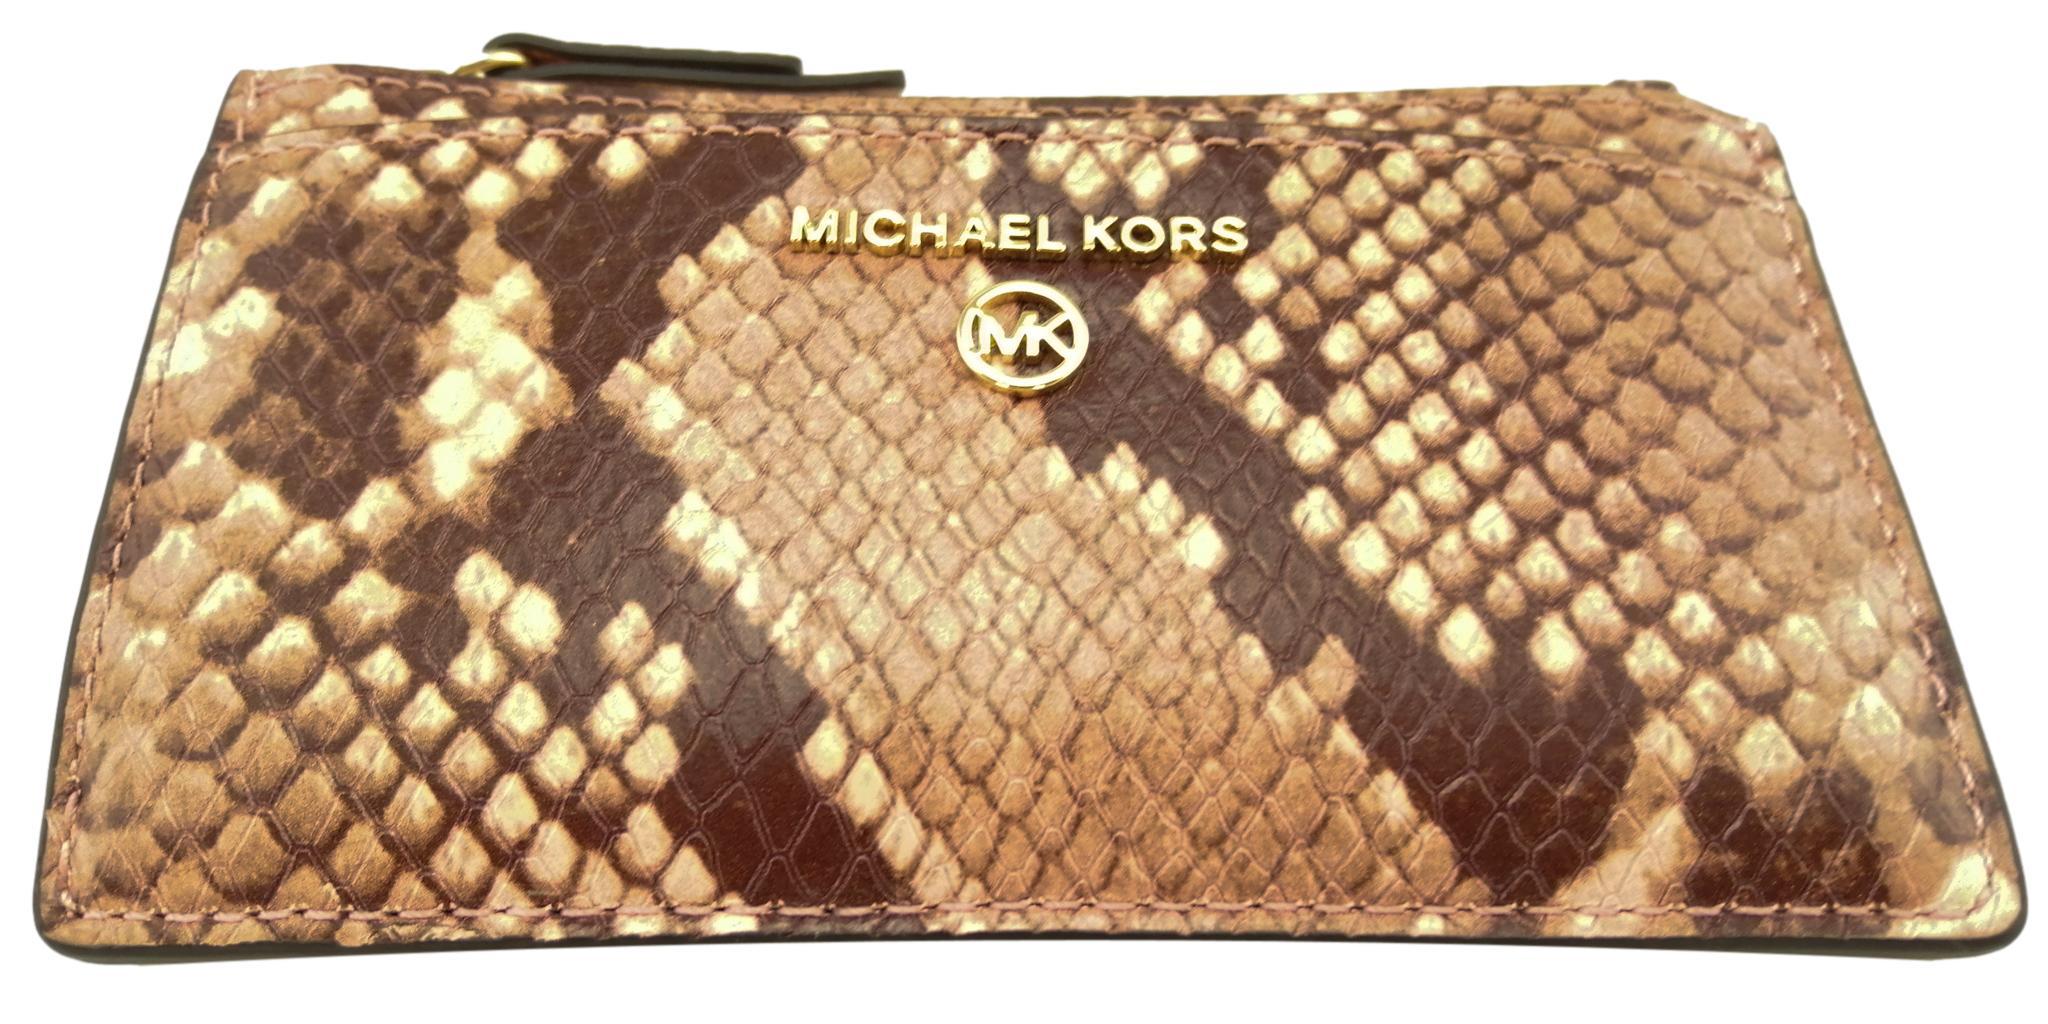 Michael Kors Bags | MK Handbags | House of Fraser